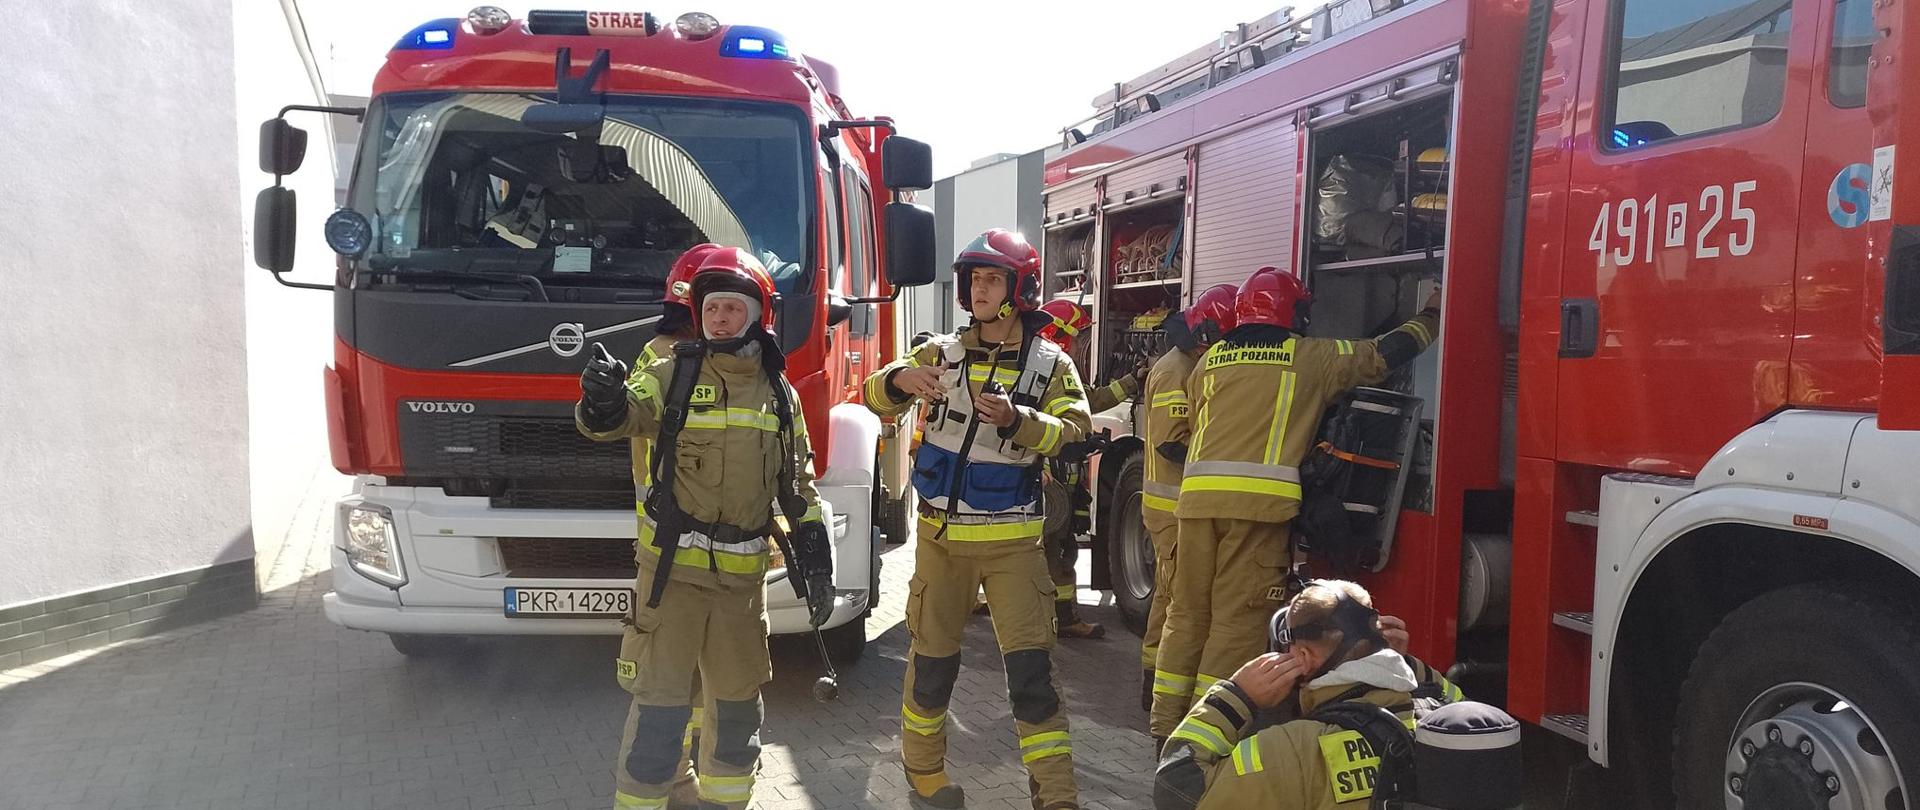 Zdjęcie przedstawia strażaków przy wozach strażackich, podczas przygotowywania się do wejścia w strefę niebezpieczną.